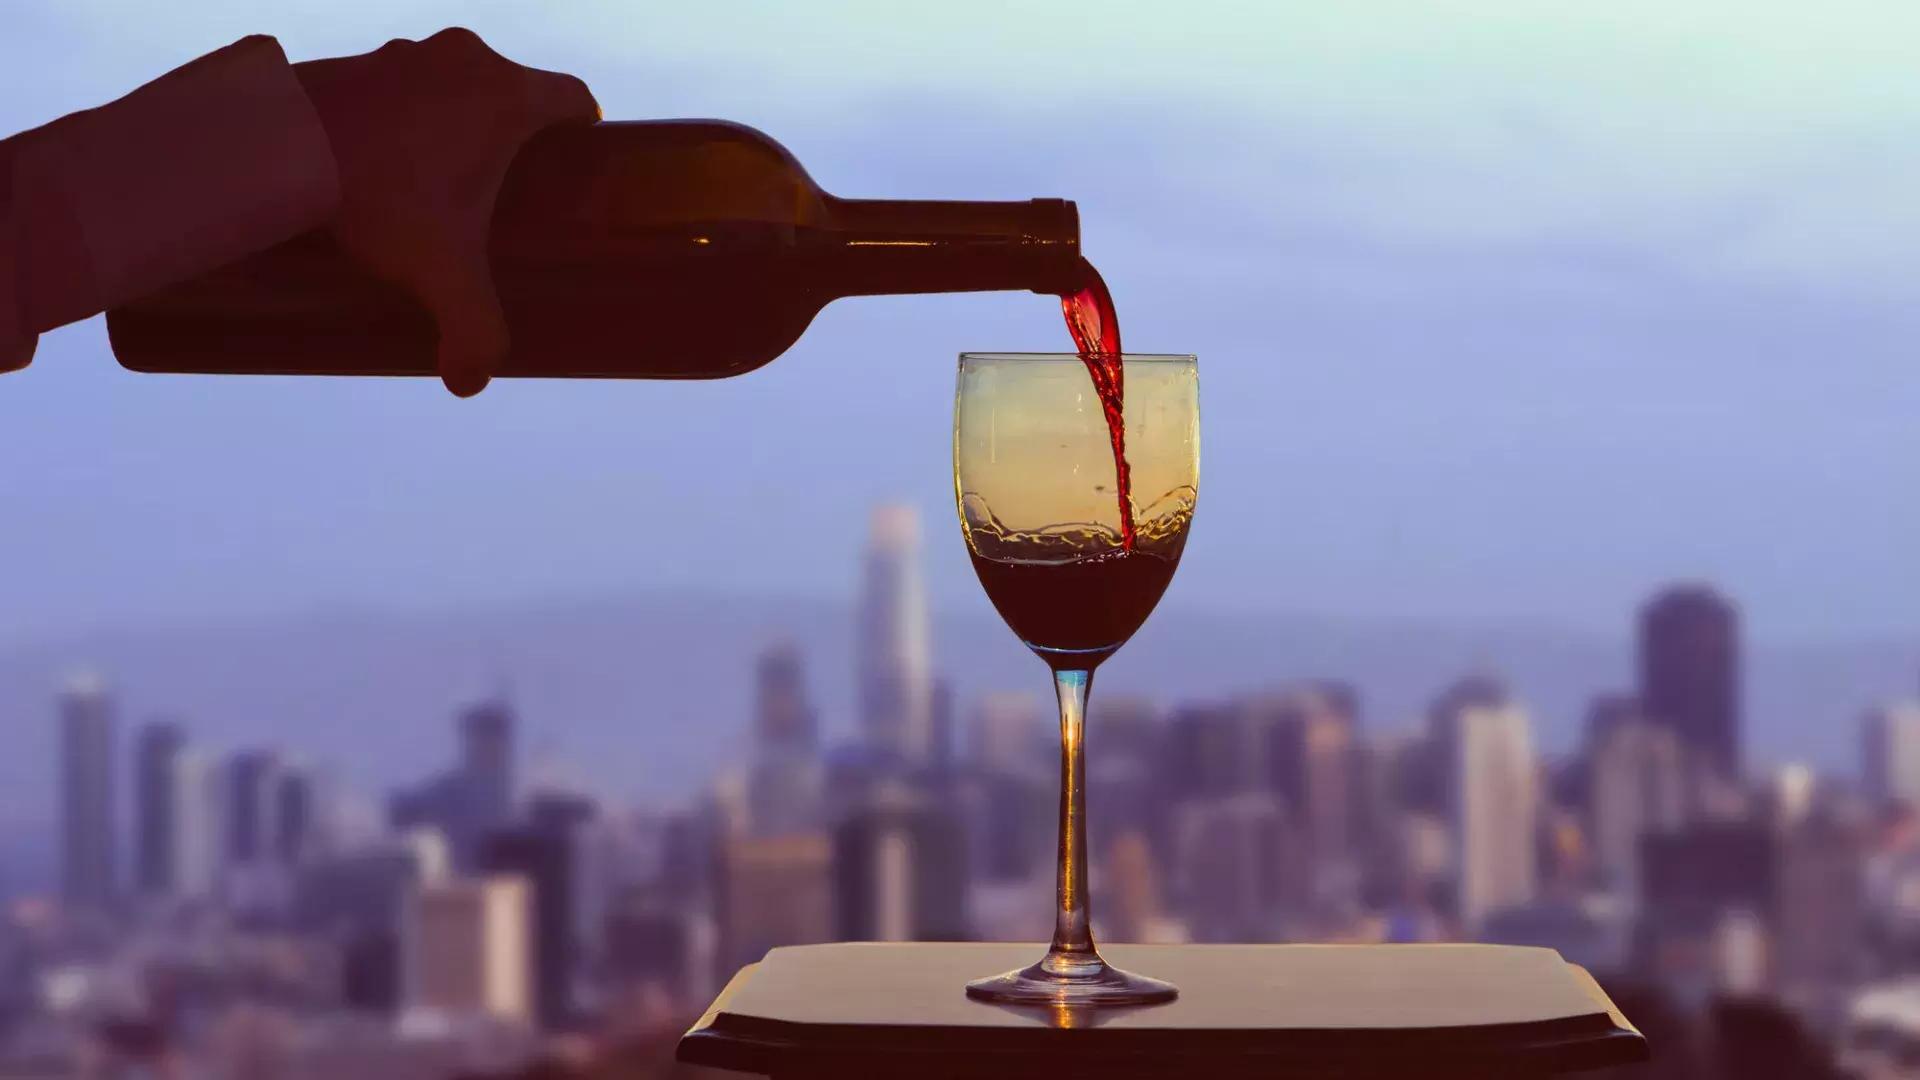 Uma taça de vinho tinto sendo servida, com o horizonte de São Francisco visível pela janela.